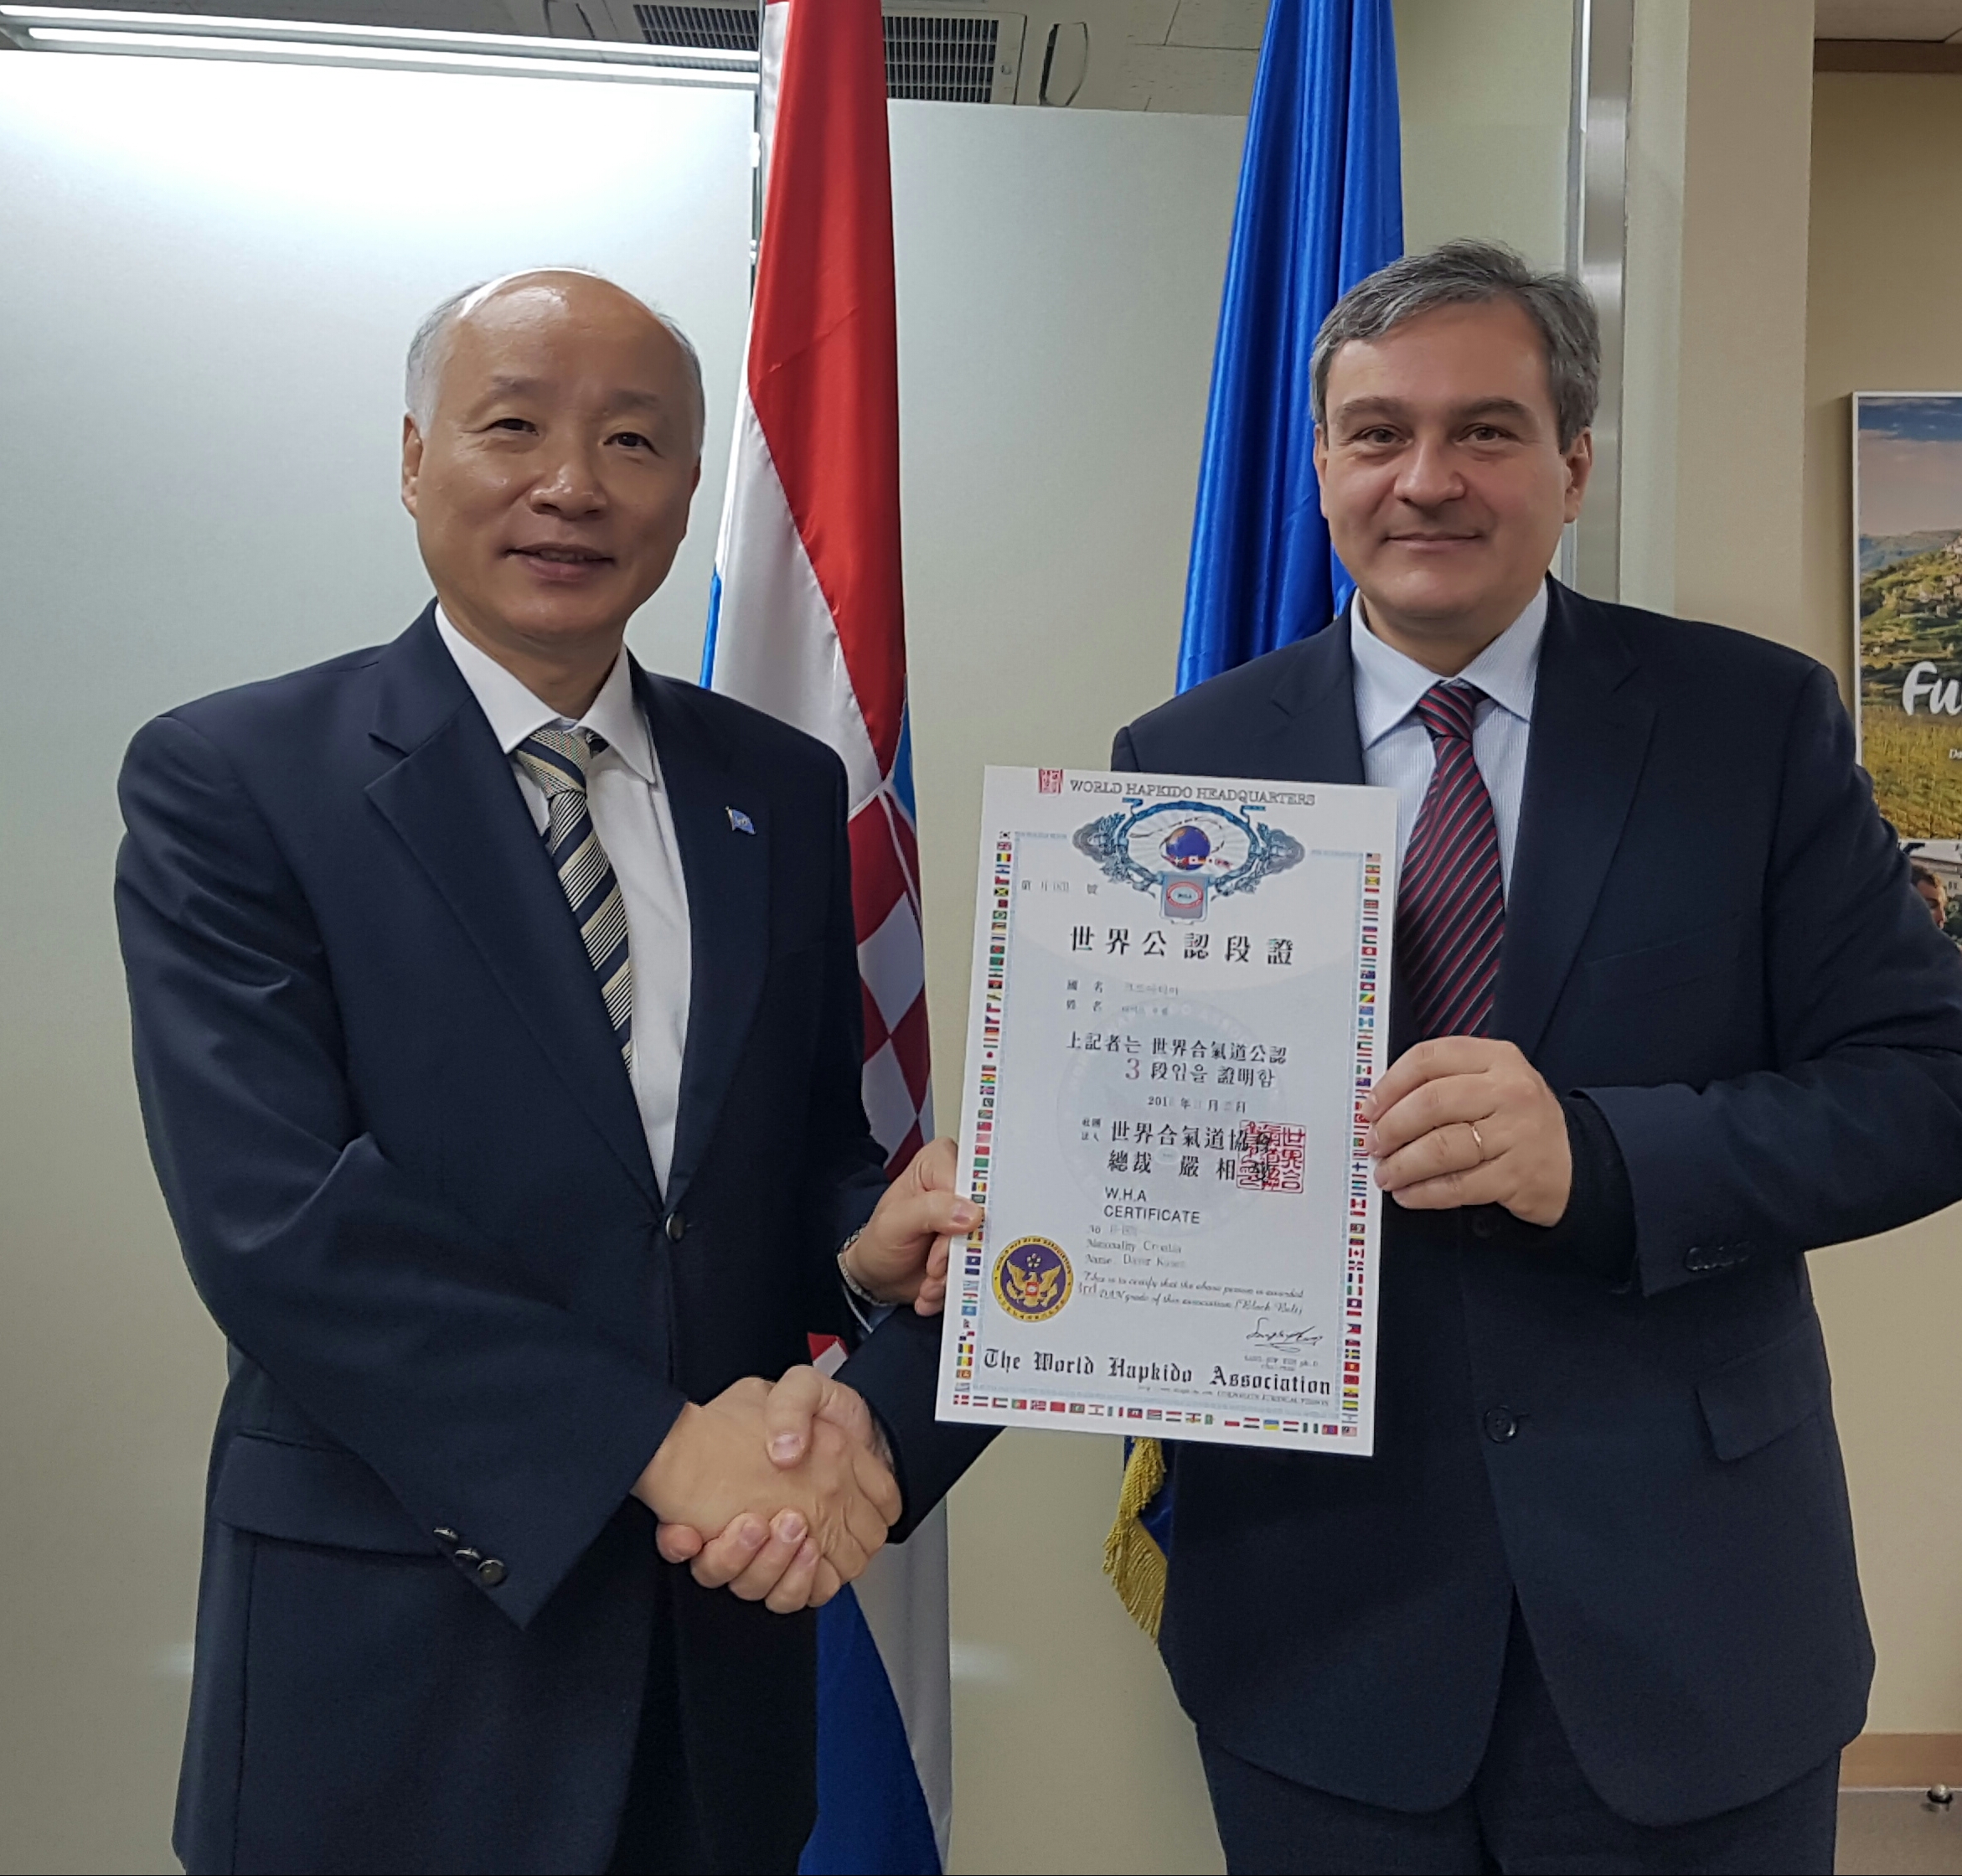 크로아티아 대사 에게 단증을 수여하고 있는 총재 예하 (2018.11.22)
Chairman awarding Dan Certificate to Croatian Ambassador
大韓民國 KOREA 대한민국 건국이래 최초로 본협회에서 주한외교사절인 102개국가 대사에게 본협회 합기도 단증을 수여함.
